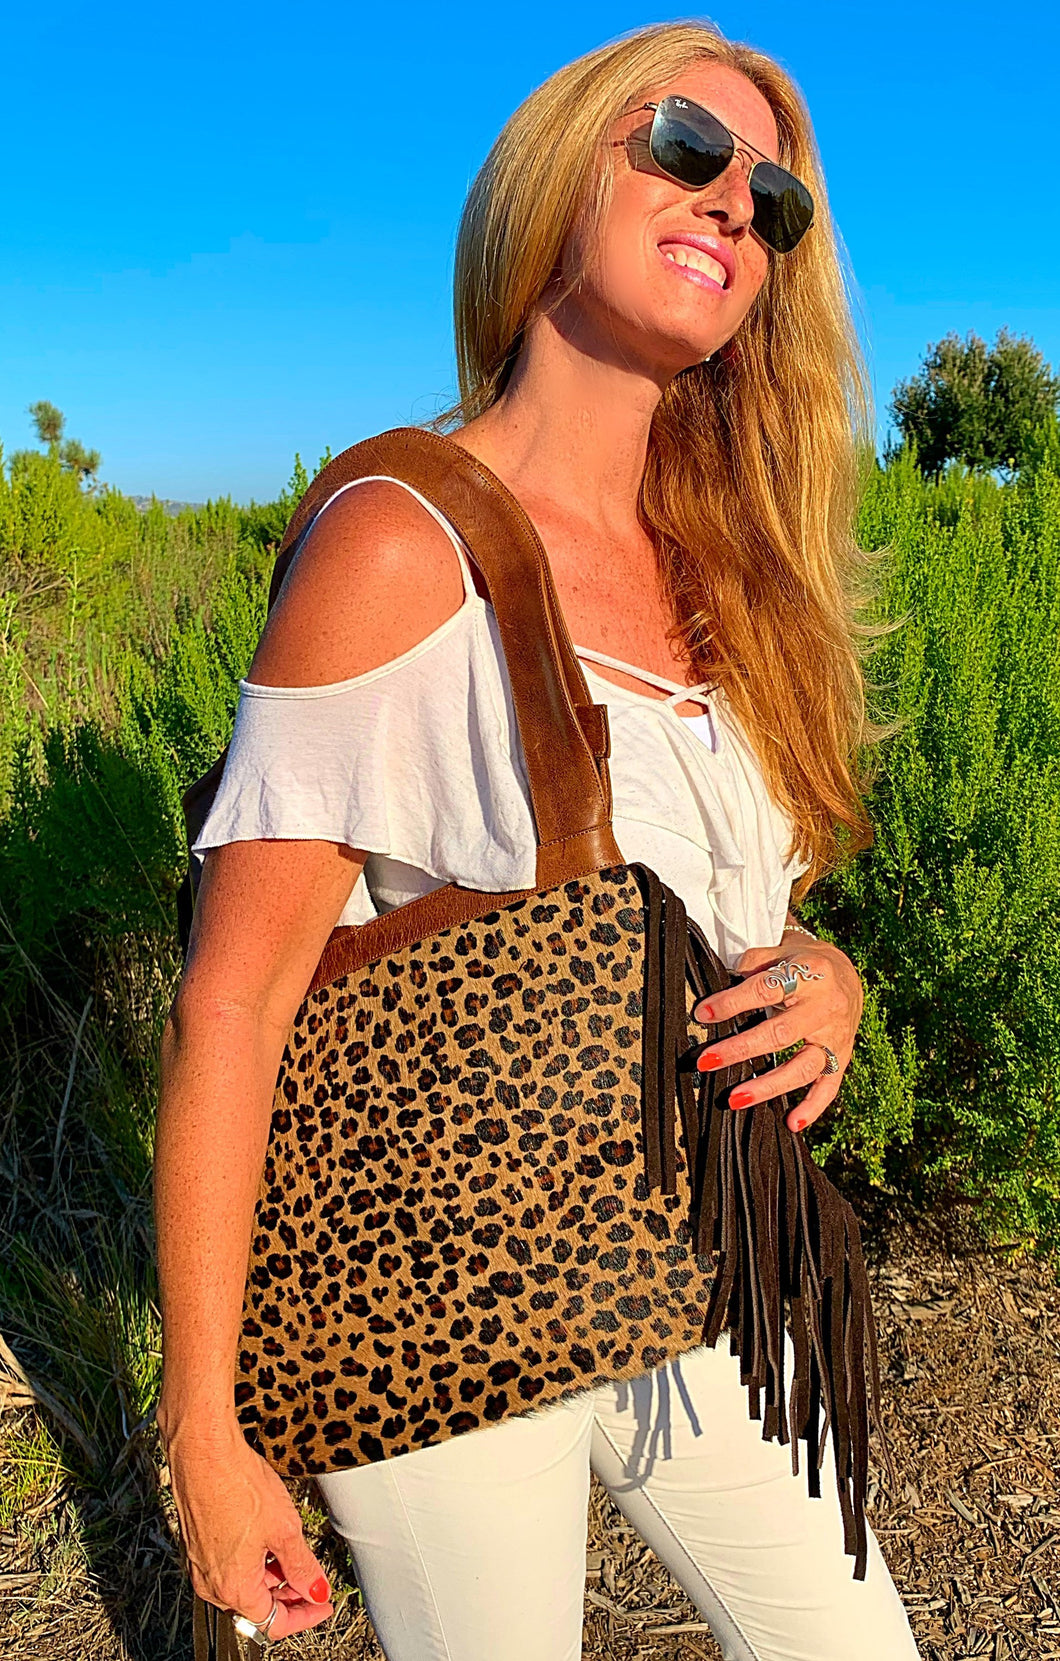 The Tiffany Cheetah shoulder bag